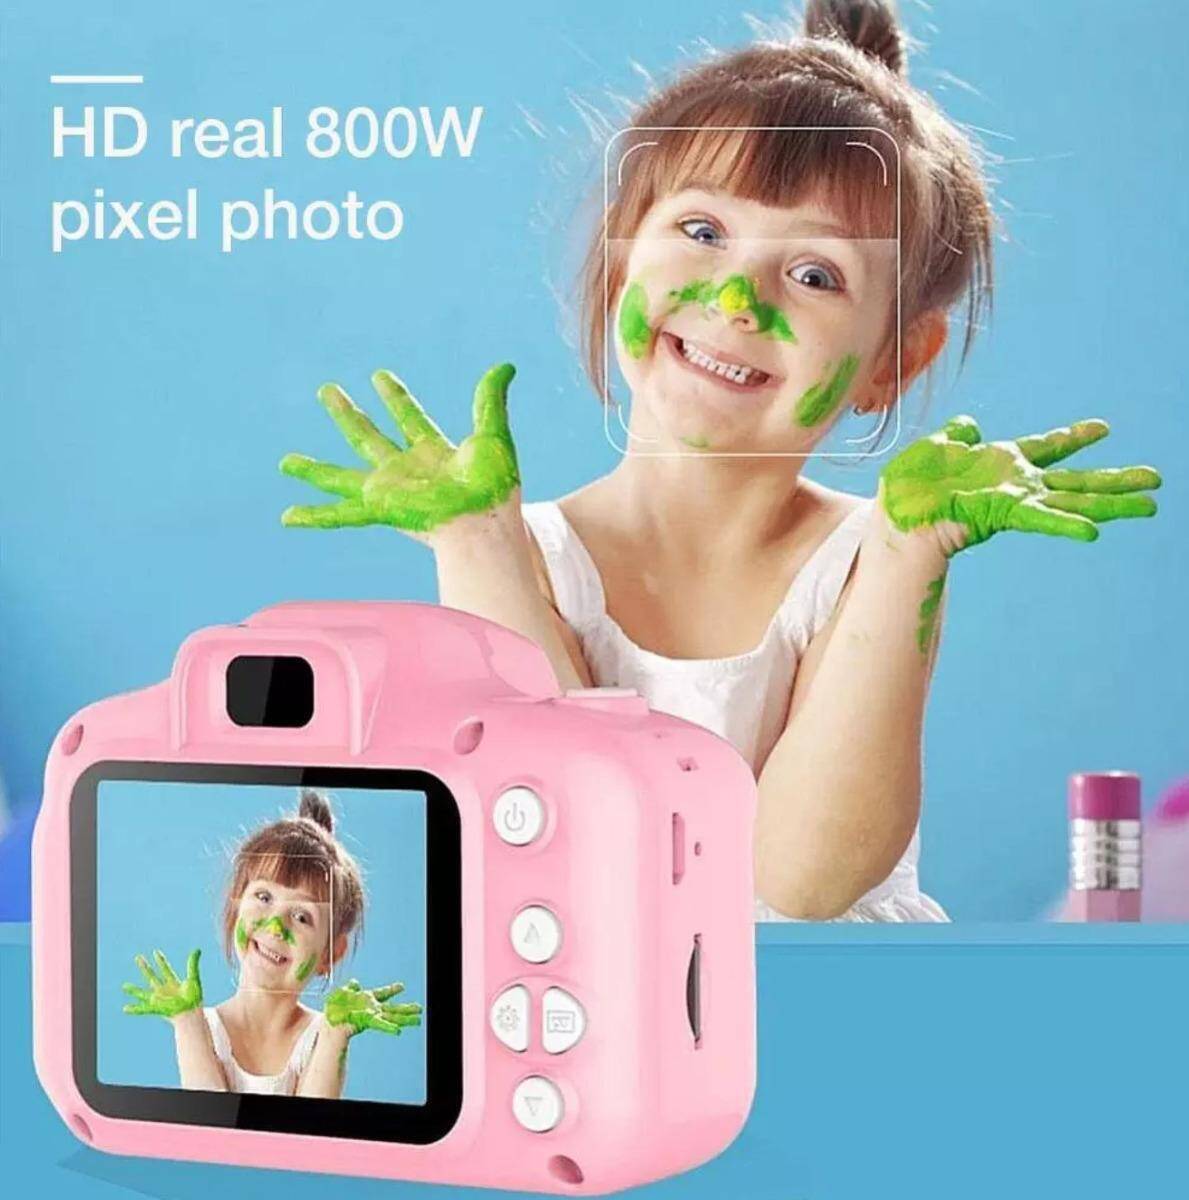 كاميرا ديجيتال للأطفال 8 ميقا بيكسل بشاشة 2 إنش-688